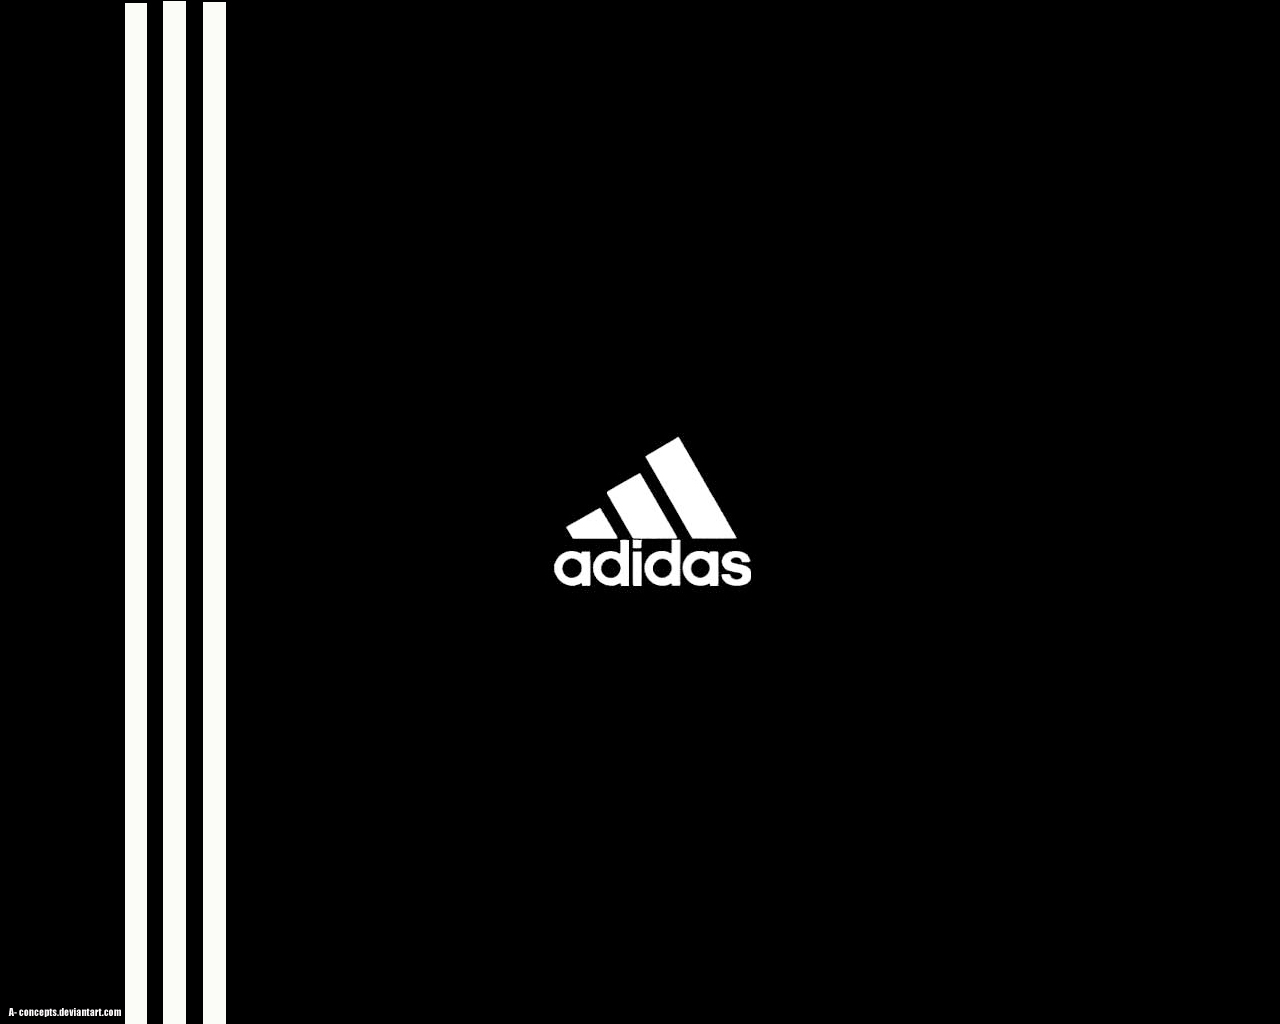 adidas, logos, background, black phone wallpaper